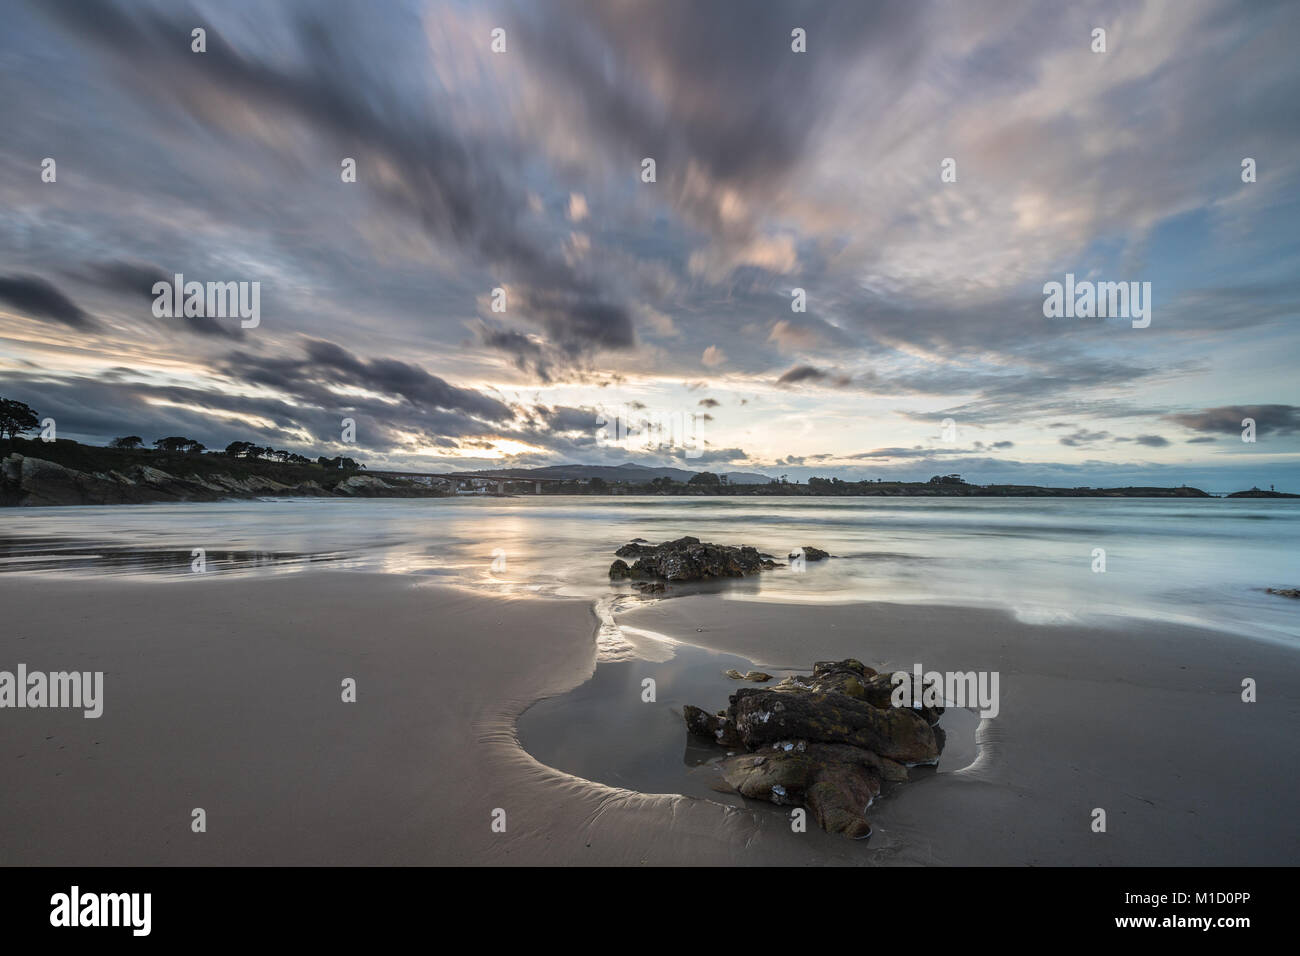 Espectacular atardecer en la playa de Arnao, Asturias, fotografías de los diferentes colores, formas y texturas de las nubes, se refleja en la fina arena Foto de stock